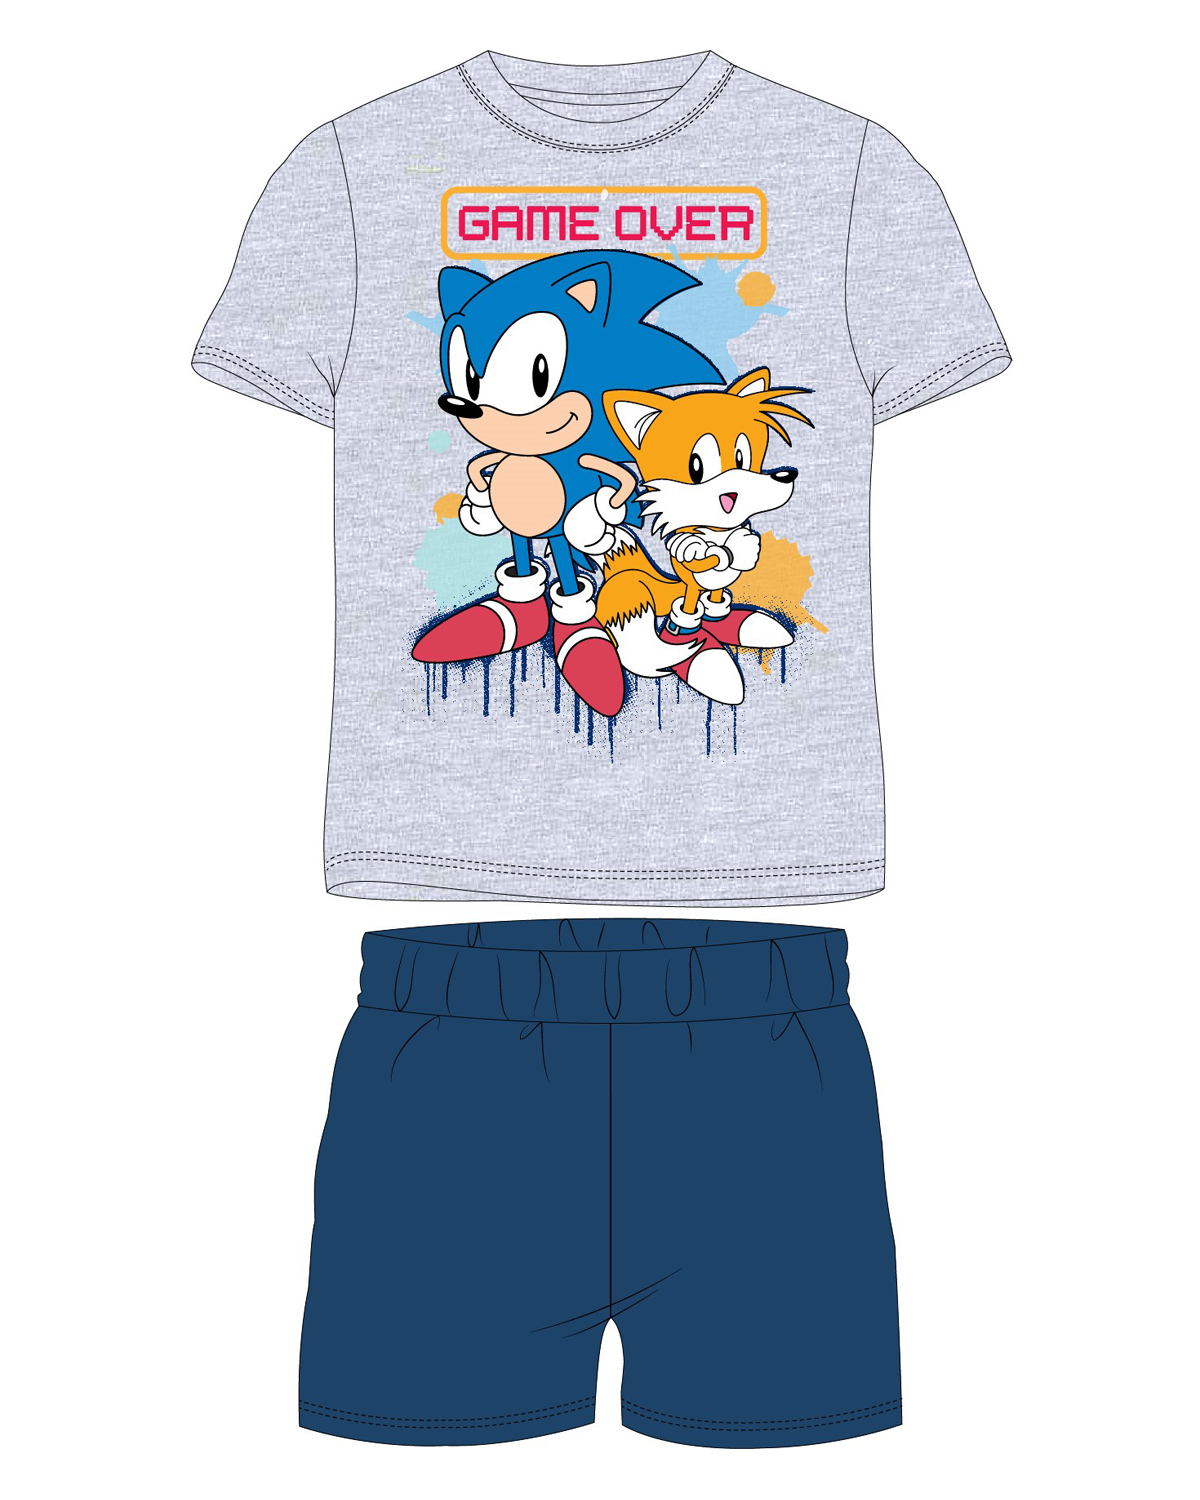 Ježek SONIC - licence Chlapecké pyžamo - Ježek Sonic 5204011, šedý melír / tmavě modrá Barva: Šedá, Velikost: 134